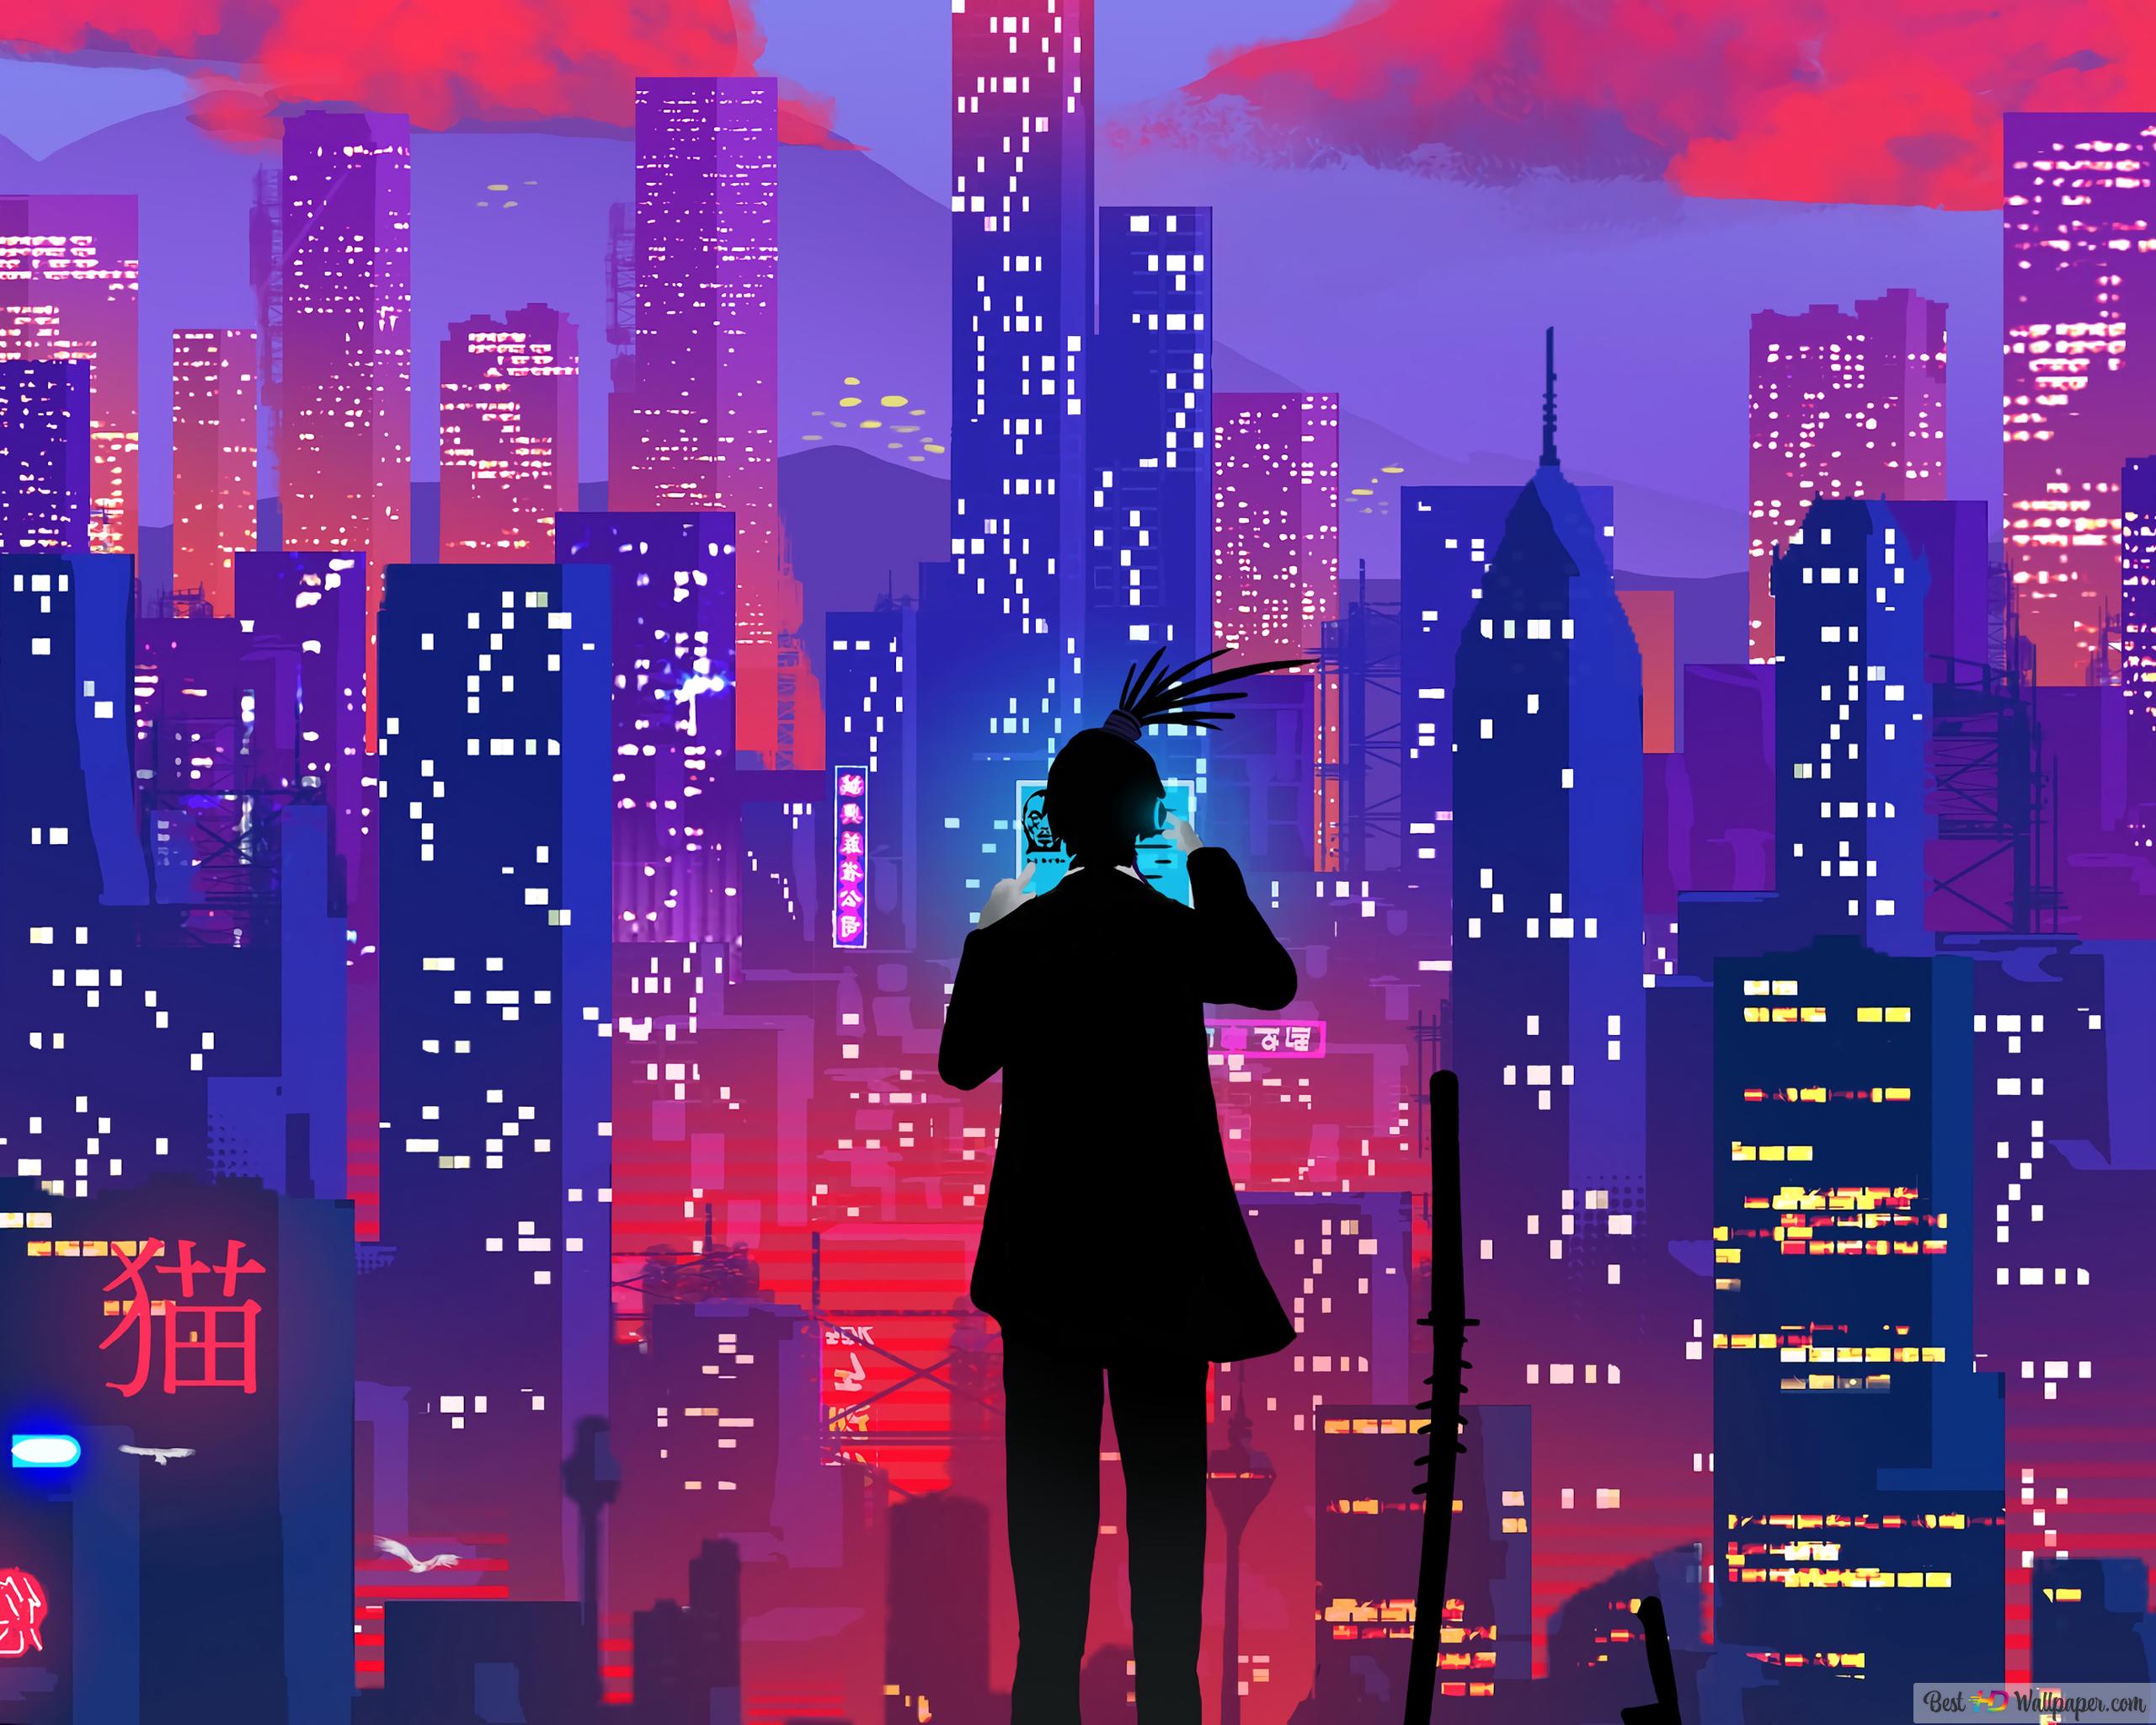 Night city illustration k wallpaper download